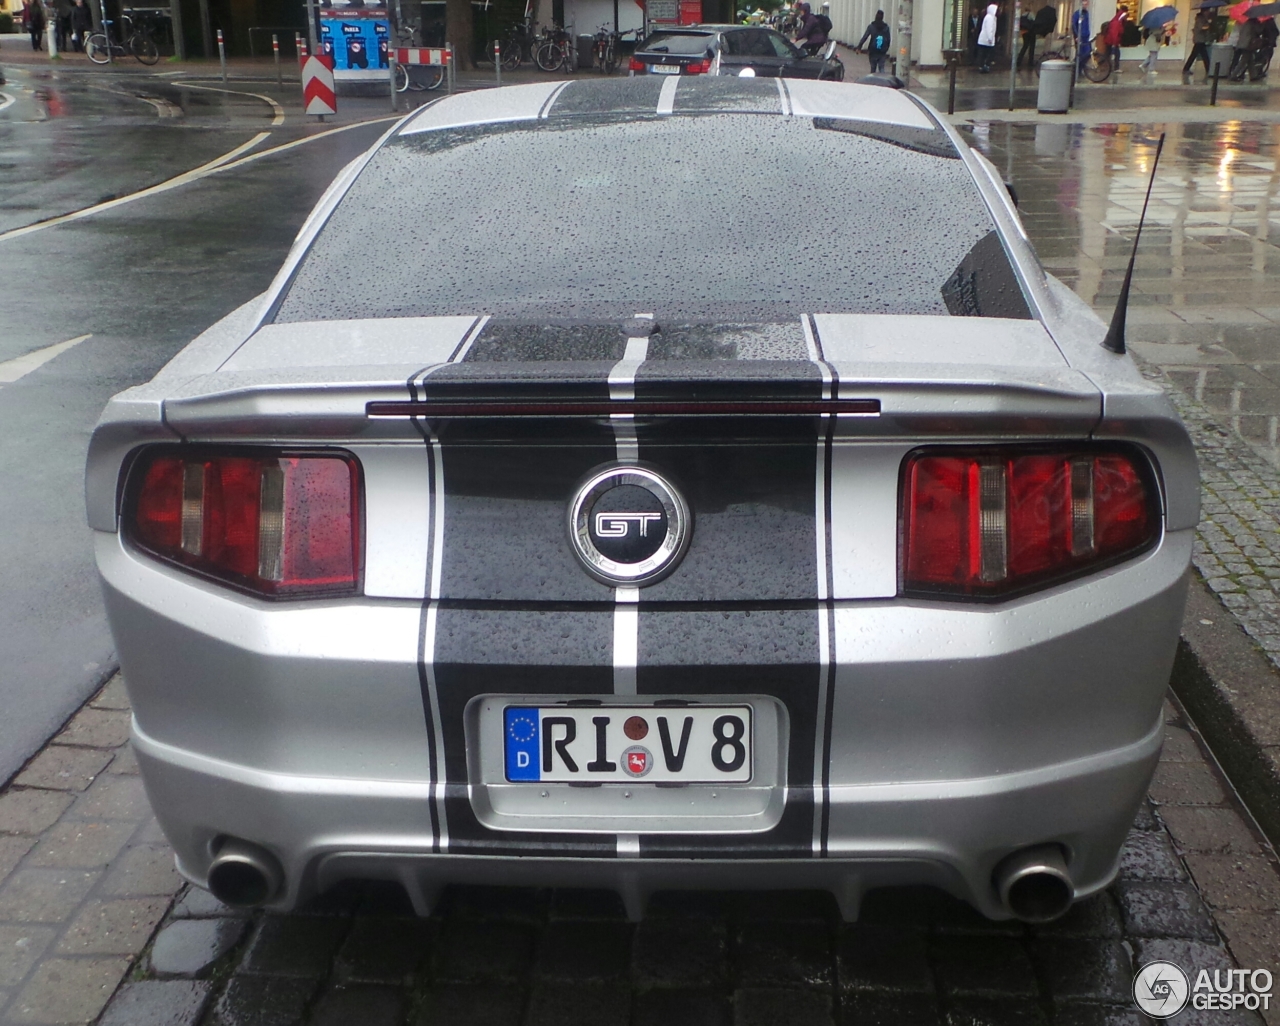 Ford Mustang GT 2011 Cervini Stalker